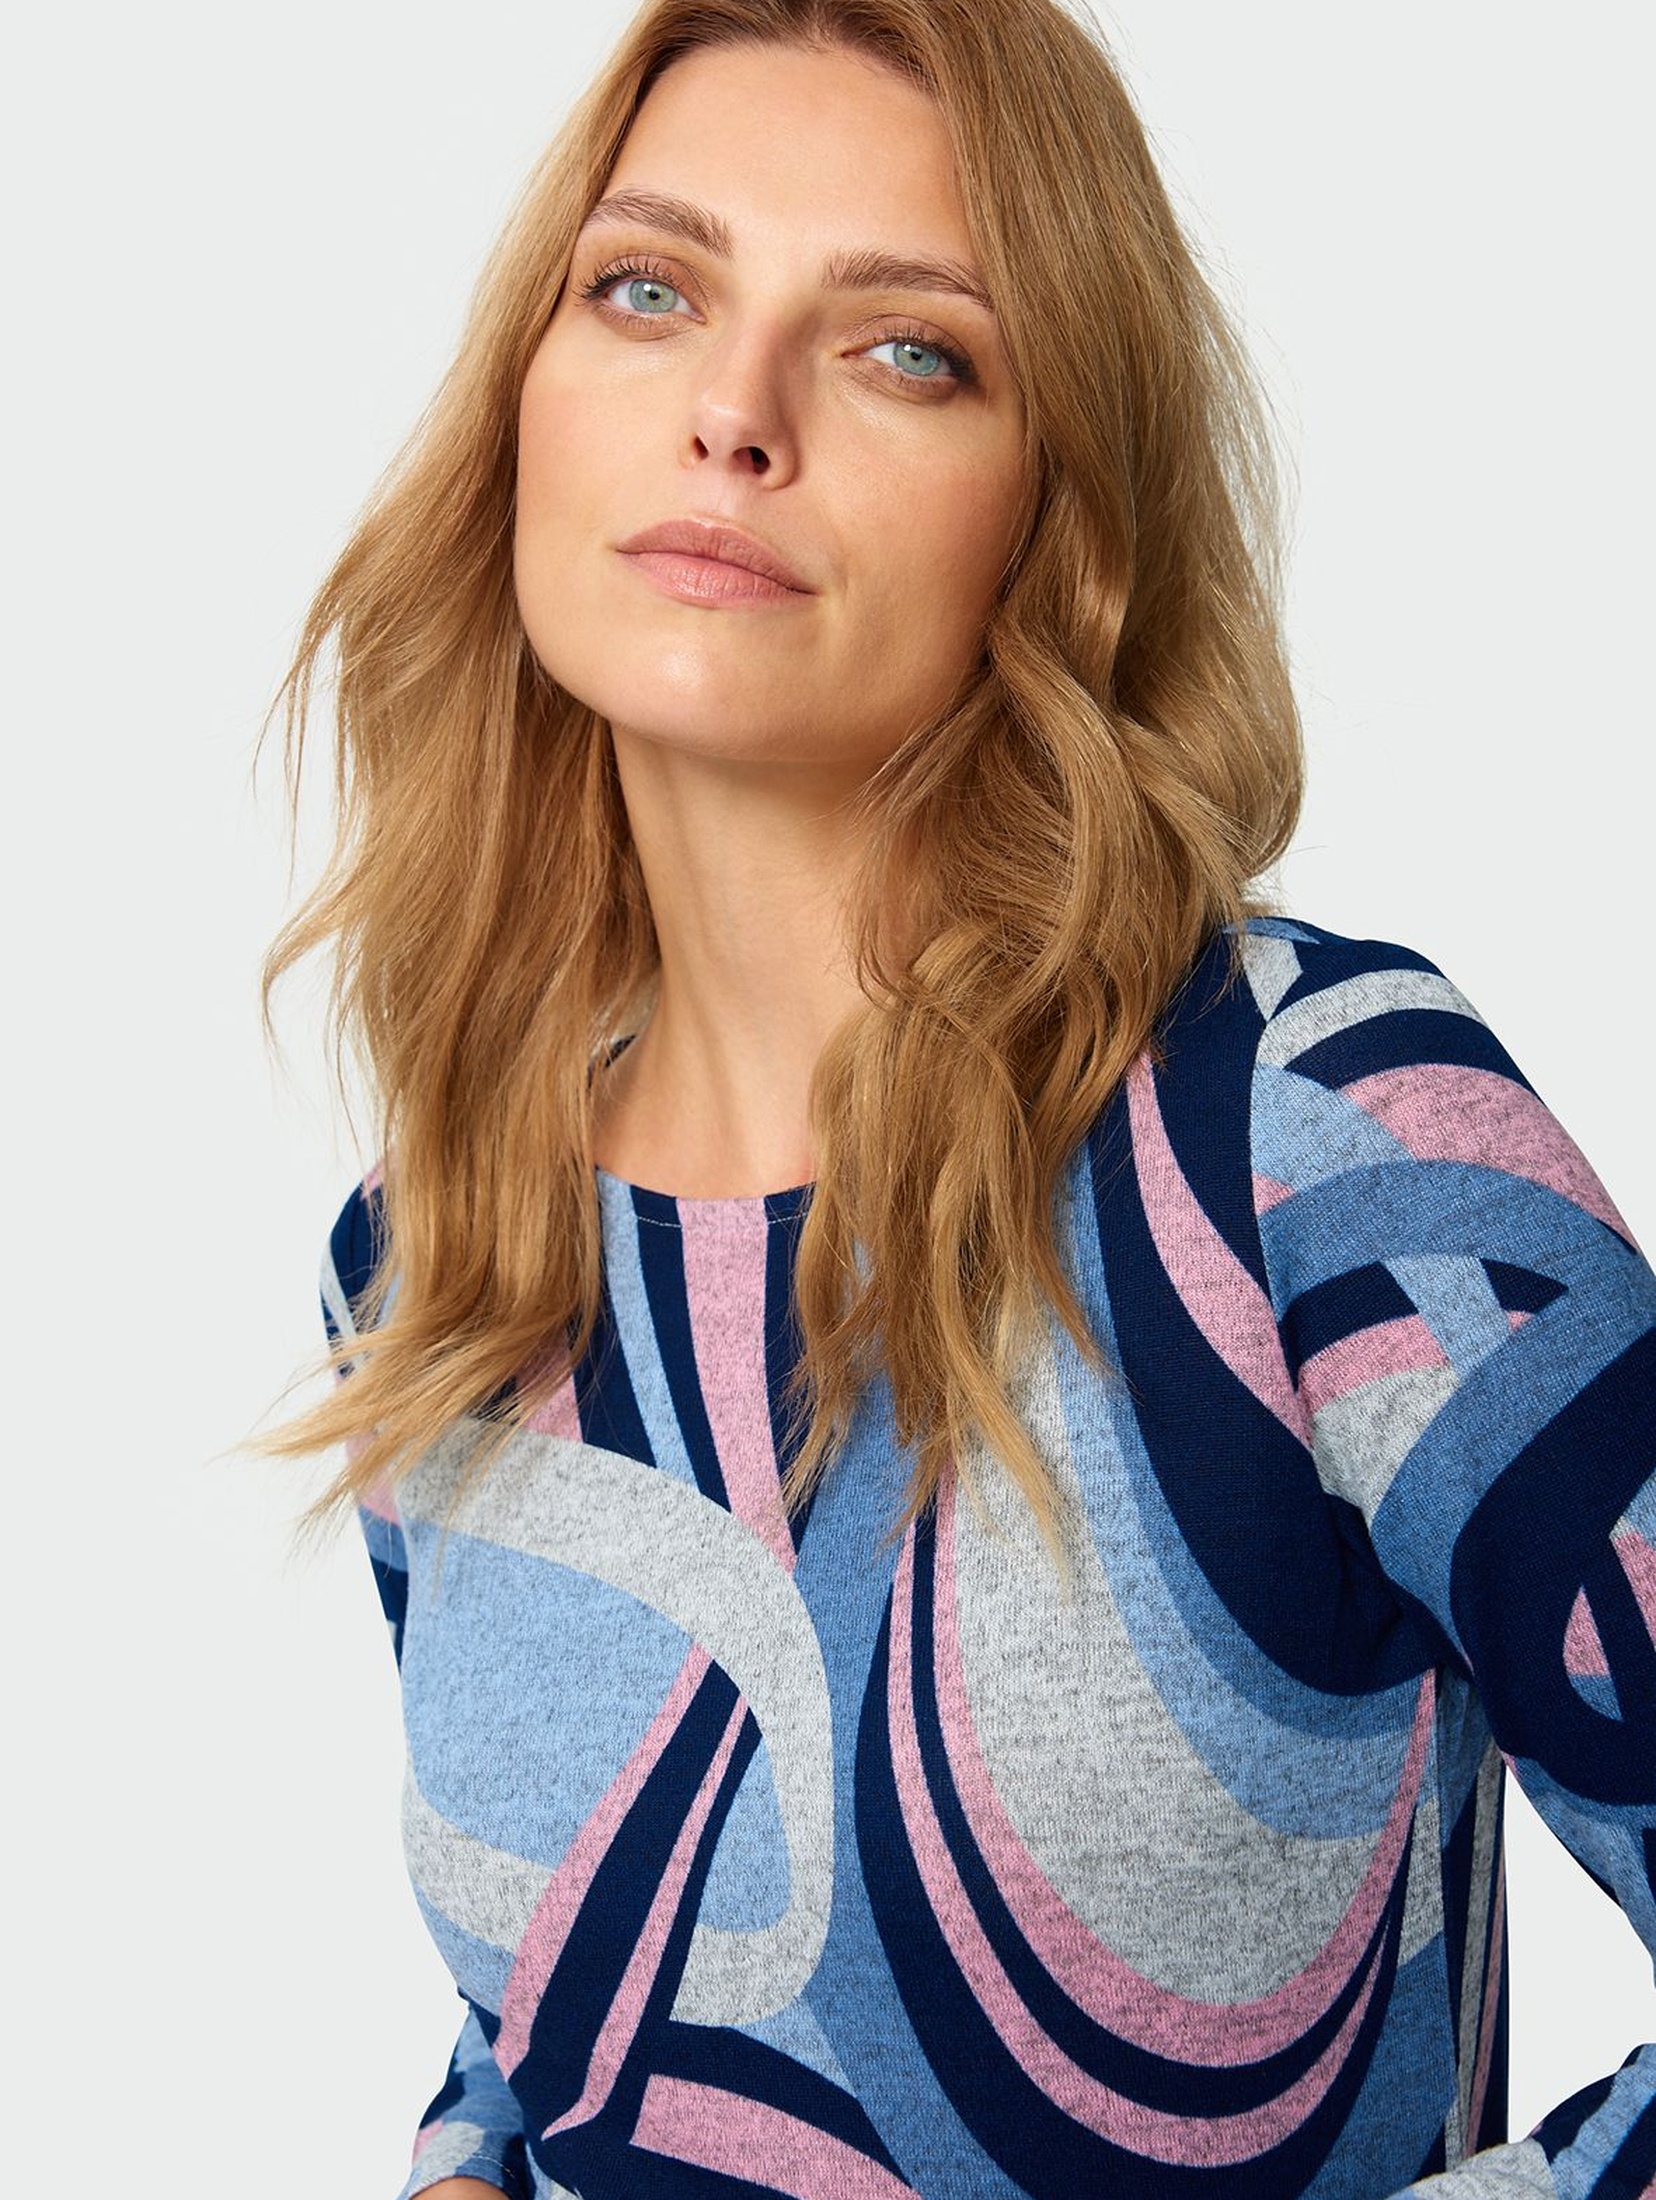 Sweter damski w kolorowe wzorki